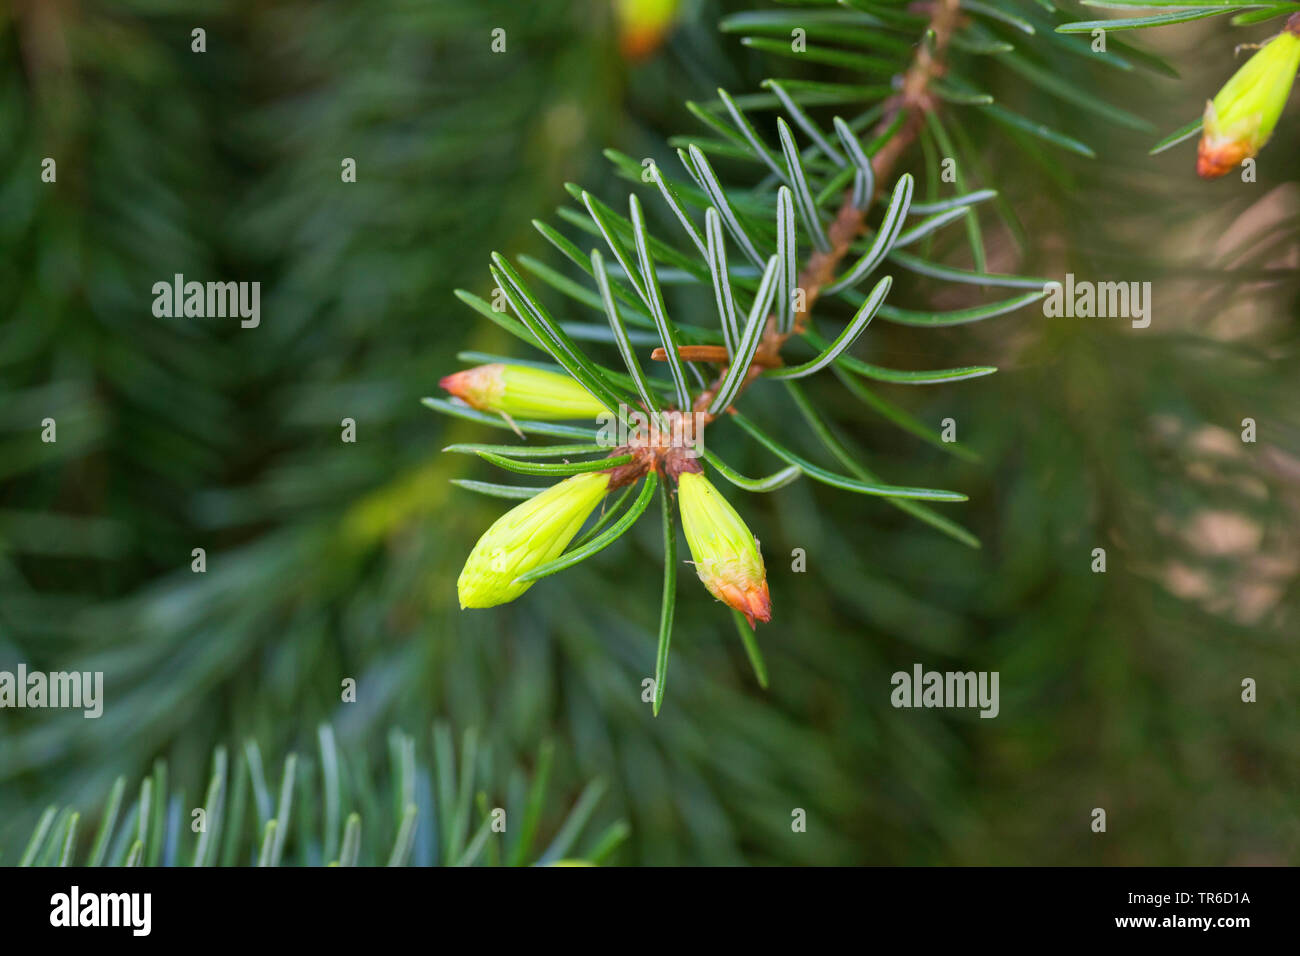 Épinette de Serbie (Picea omorika), prise de vue de l'aiguille Banque D'Images